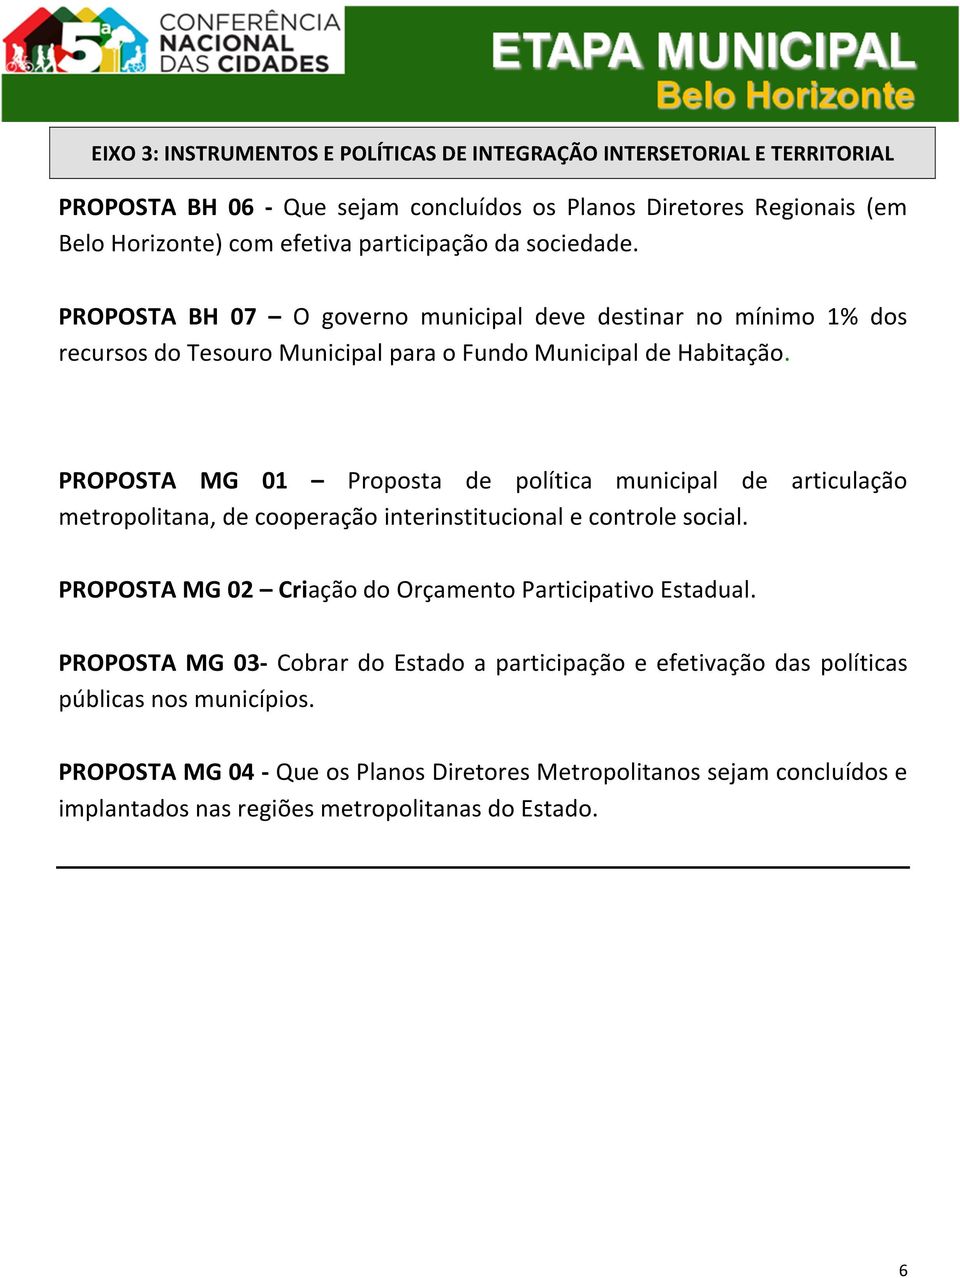 PROPOSTA MG 01 Proposta de política municipal de articulação metropolitana, de cooperação interinstitucional e controle social.